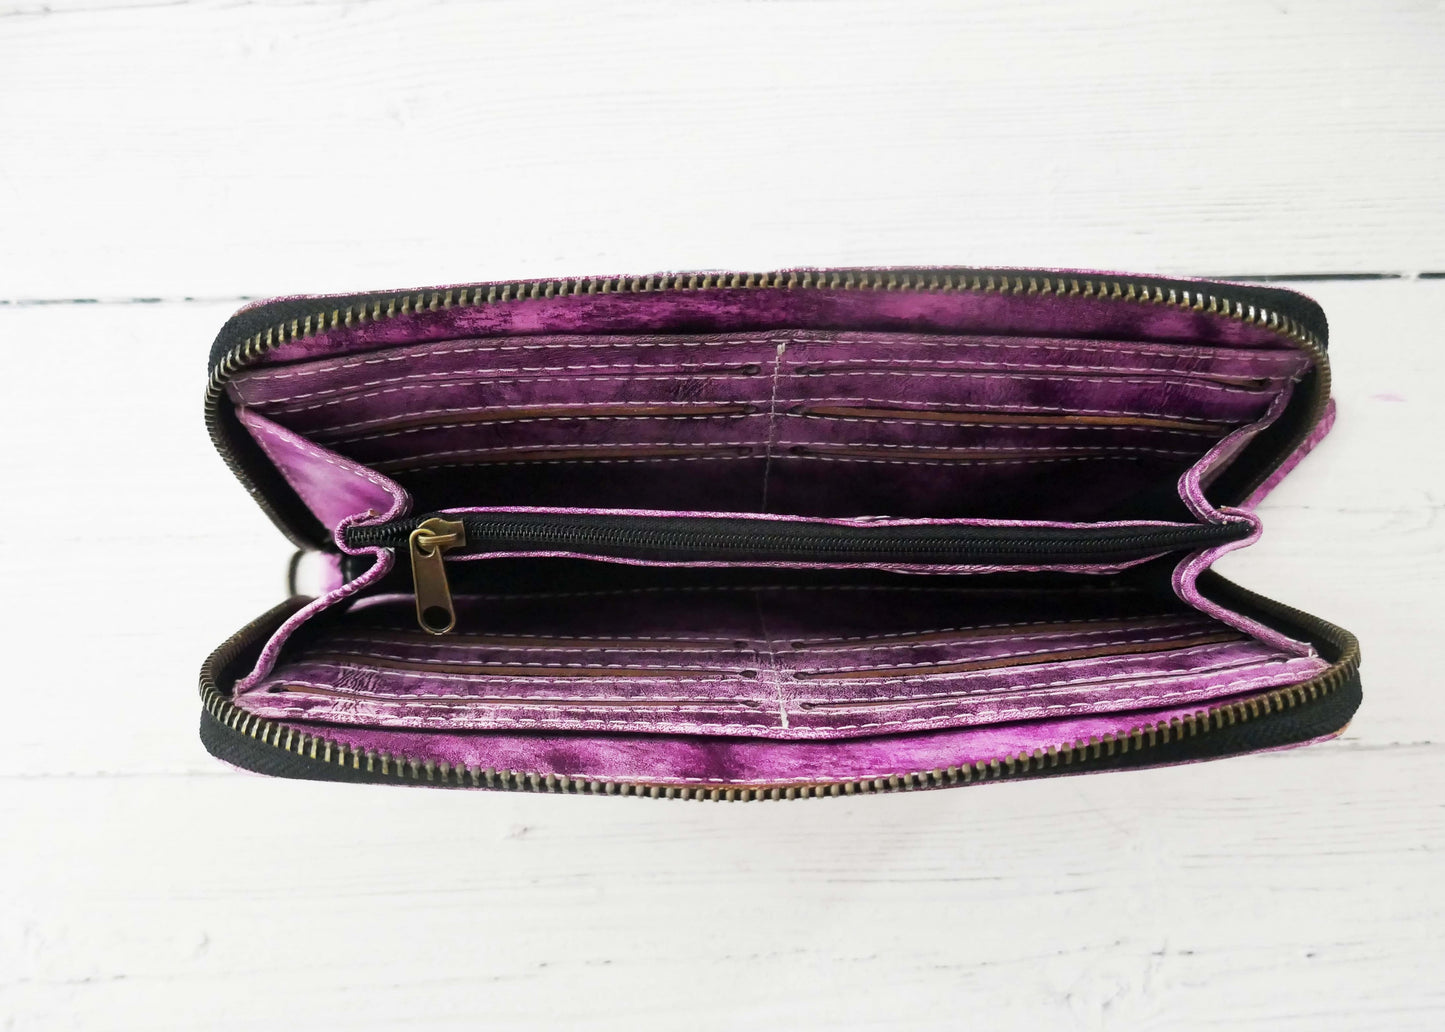 Purple Floral Zip Around Wallet